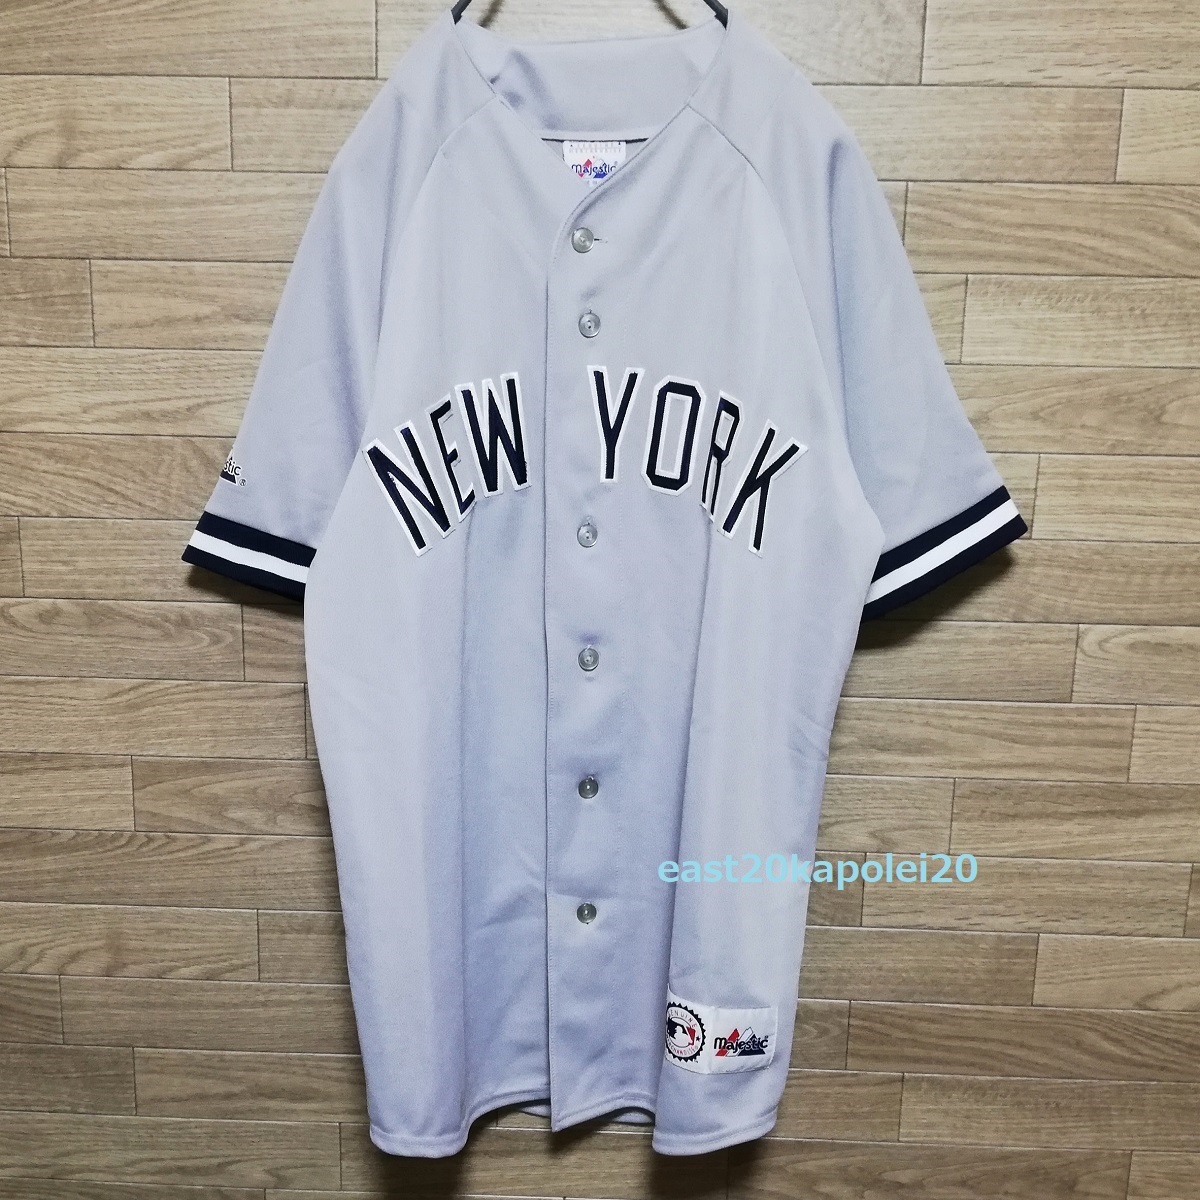 MLB ニューヨーク ヤンキース 背番号 ♯22 刺繍 ビジター レプリカ ユニフォーム ジャージ マジェスティック Majestic クレメンス カノ